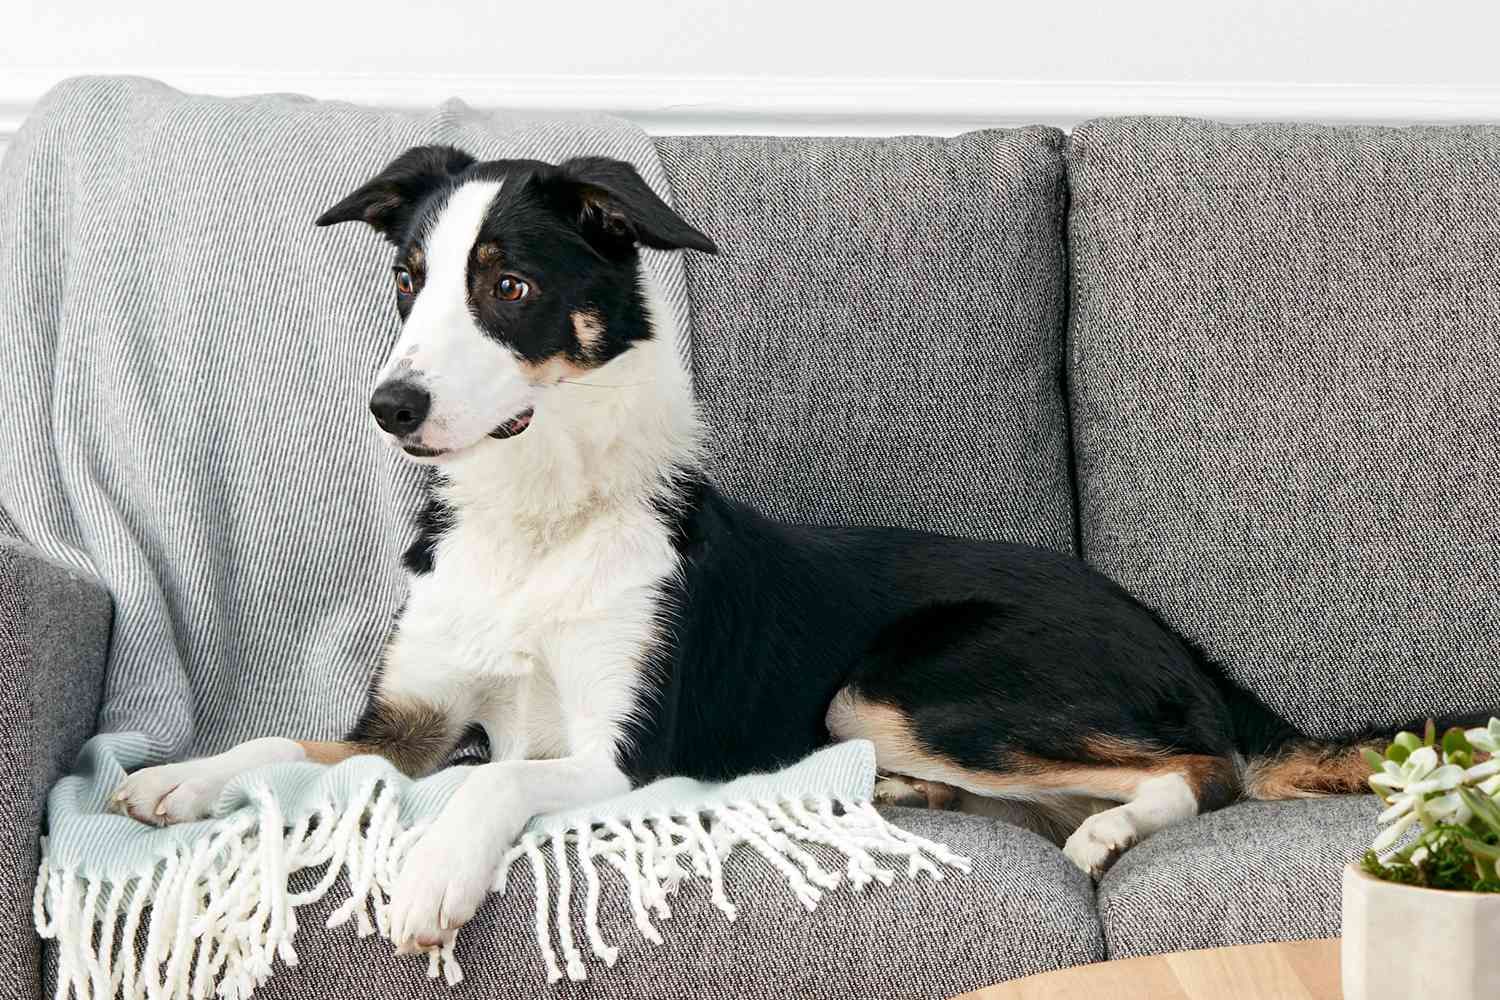 A Border Collie on a sofa